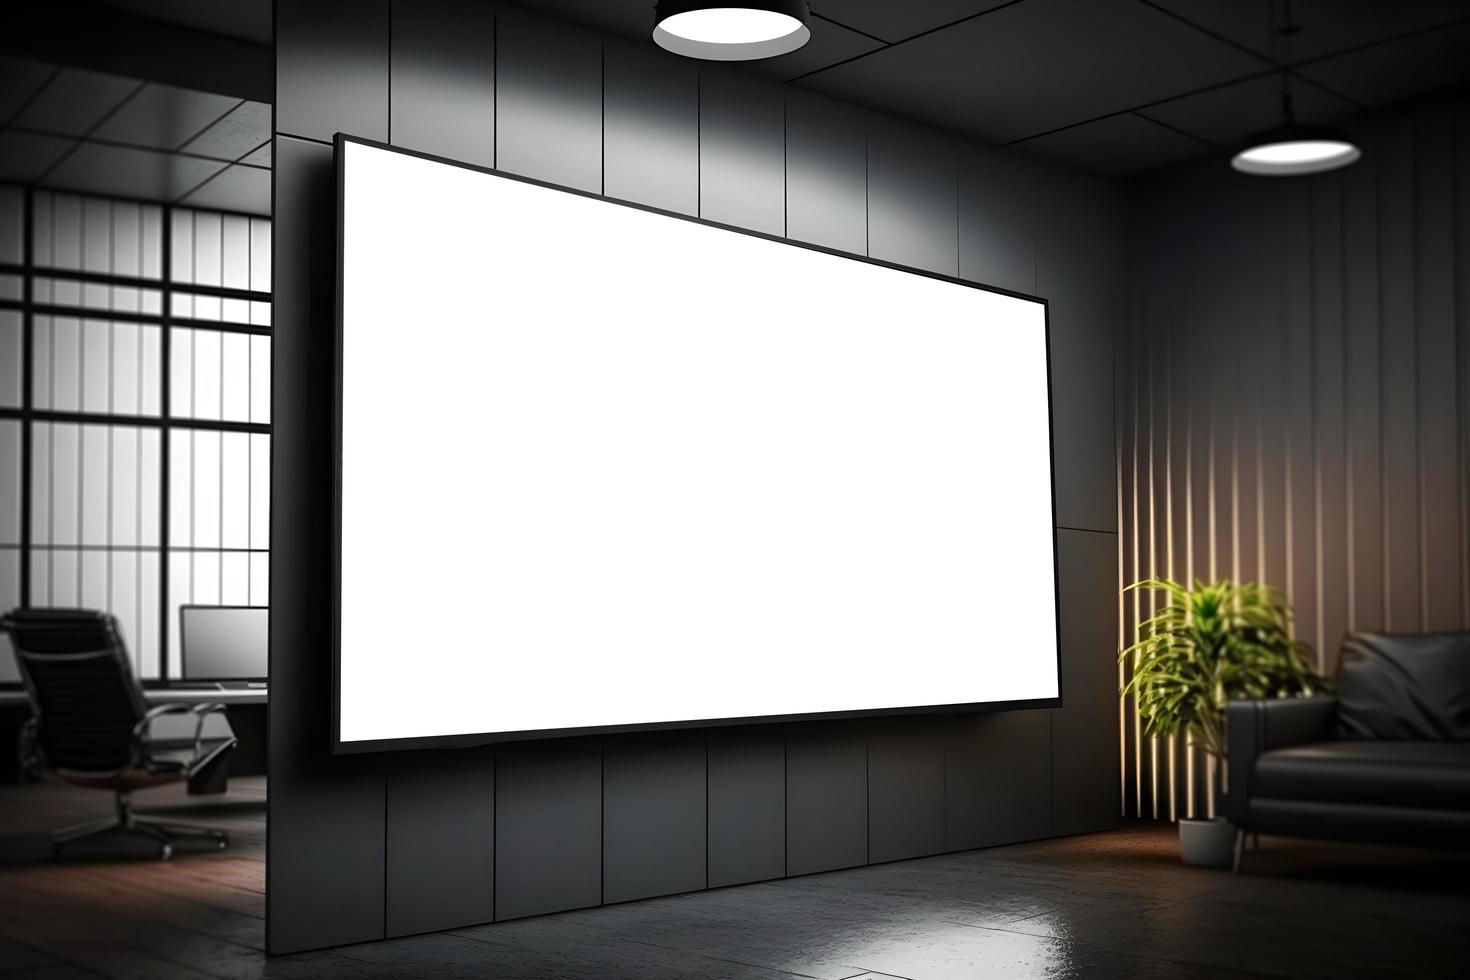 réaliste 3d côté vue de présentation écran dans moderne Bureau environnement, moderne intérieur avec large LED écran maquette, conduit écran maquette à l'intérieur Bureau photo